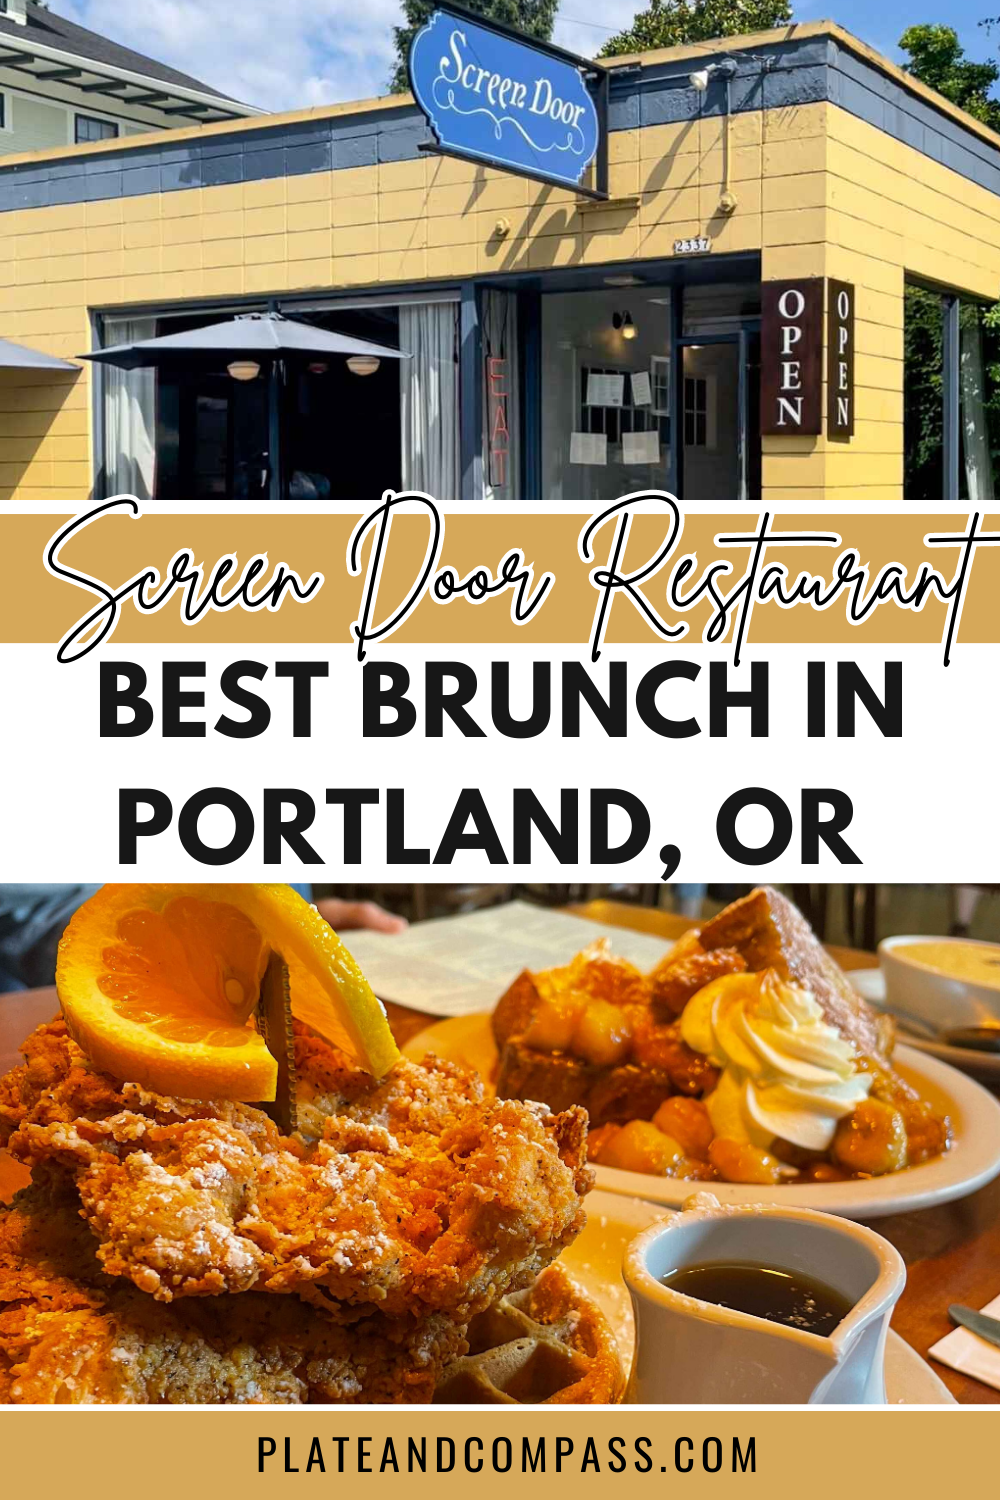 Screen Door Restaurant, Best Brunch in Portland, OR